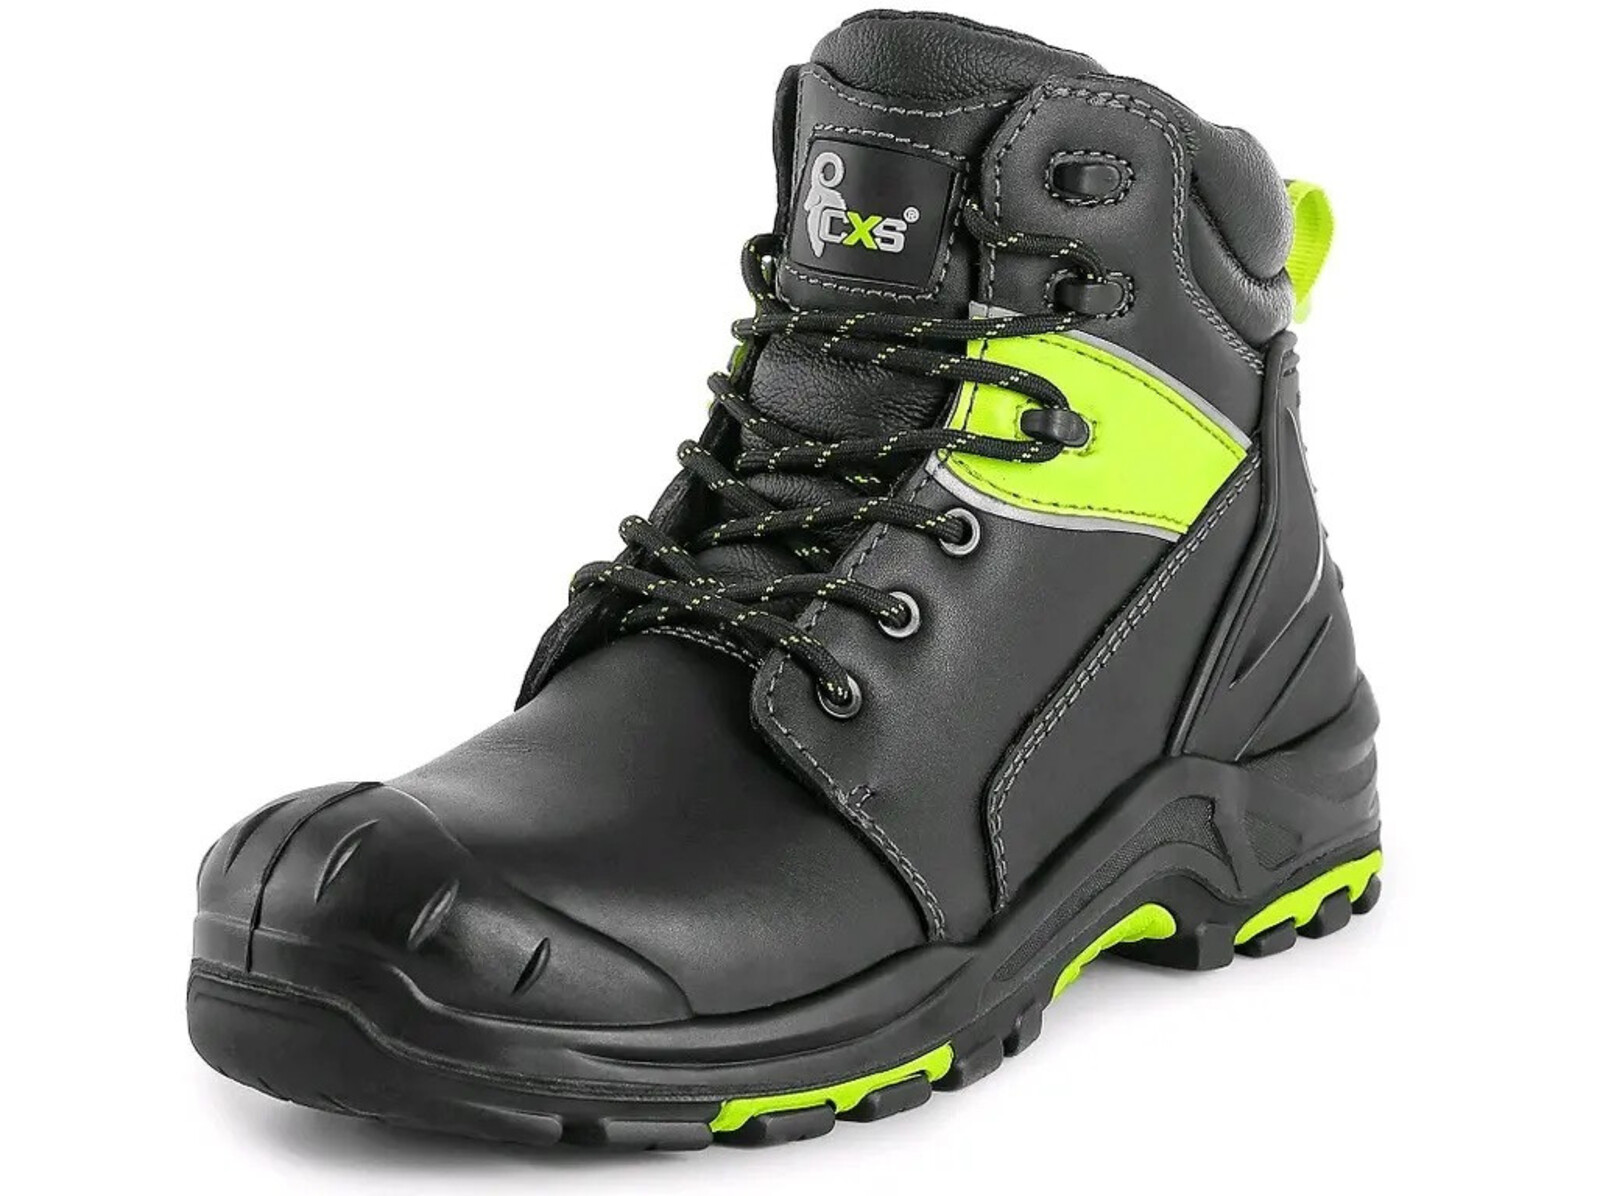 Bezpečnostná členková obuv CXS Universe Solid S3 SRC HRO MF - veľkosť: 45, farba: čierna/zelená